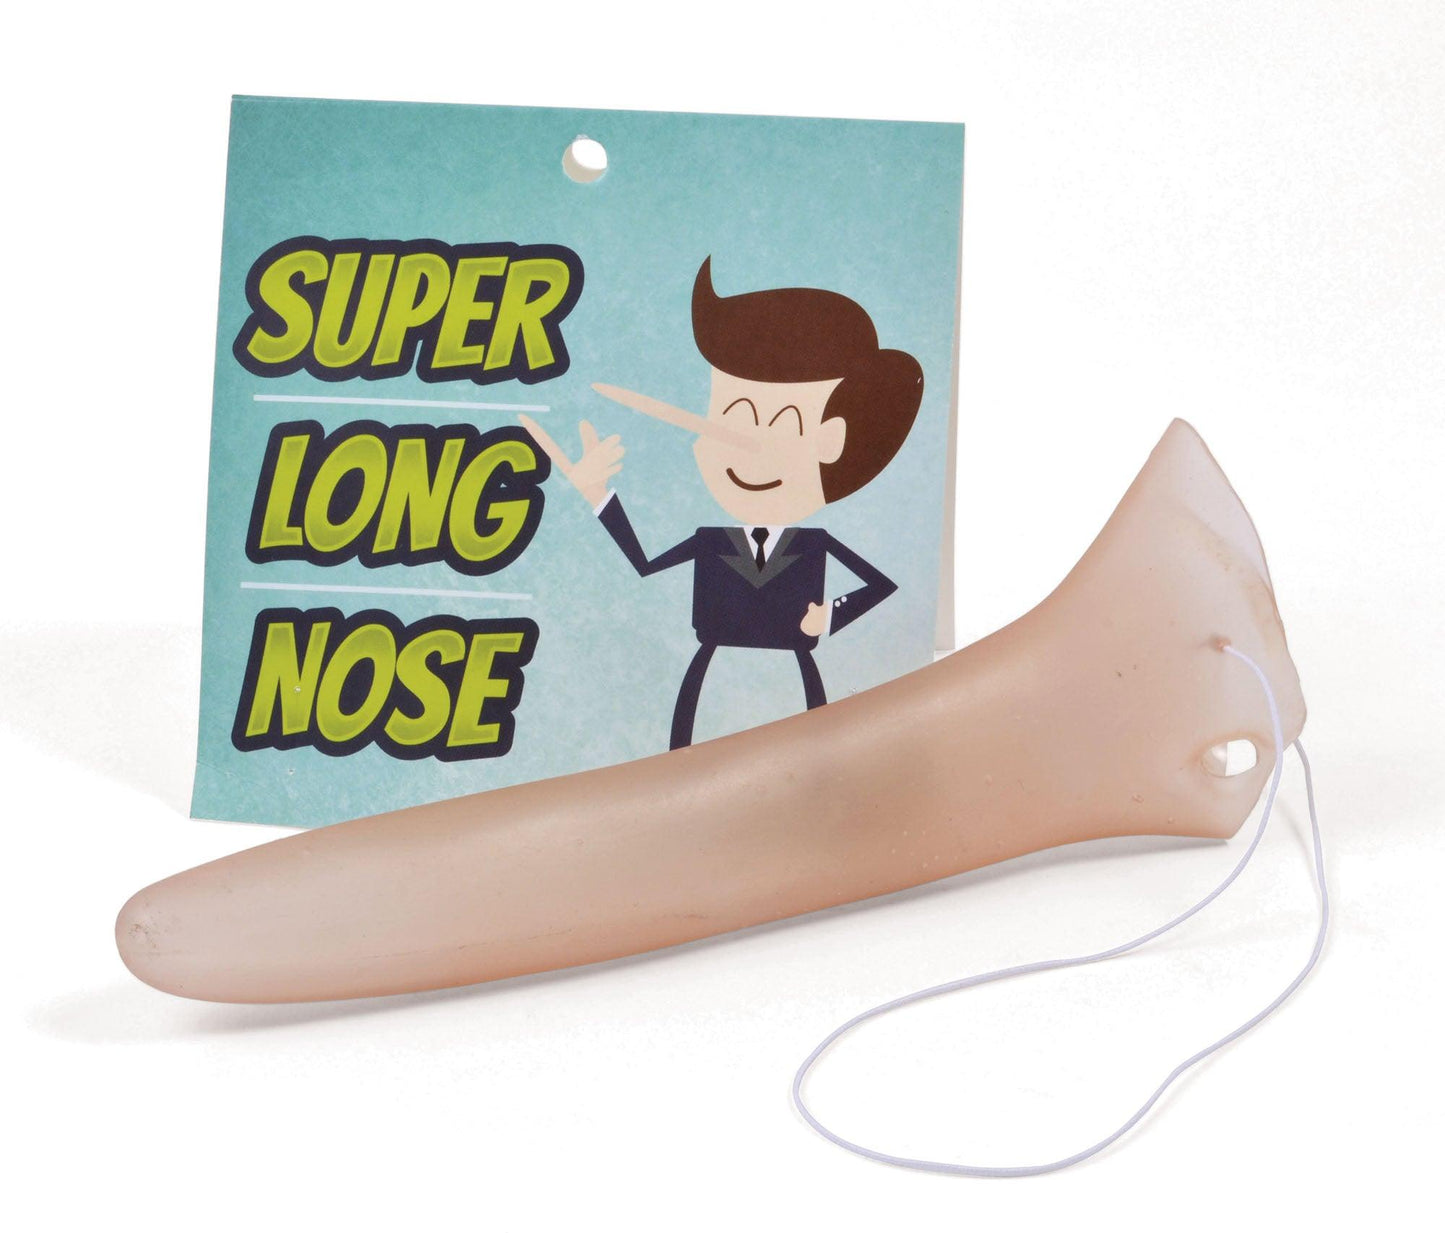 Super Long Nose (Pincchio Type) - Labreeze